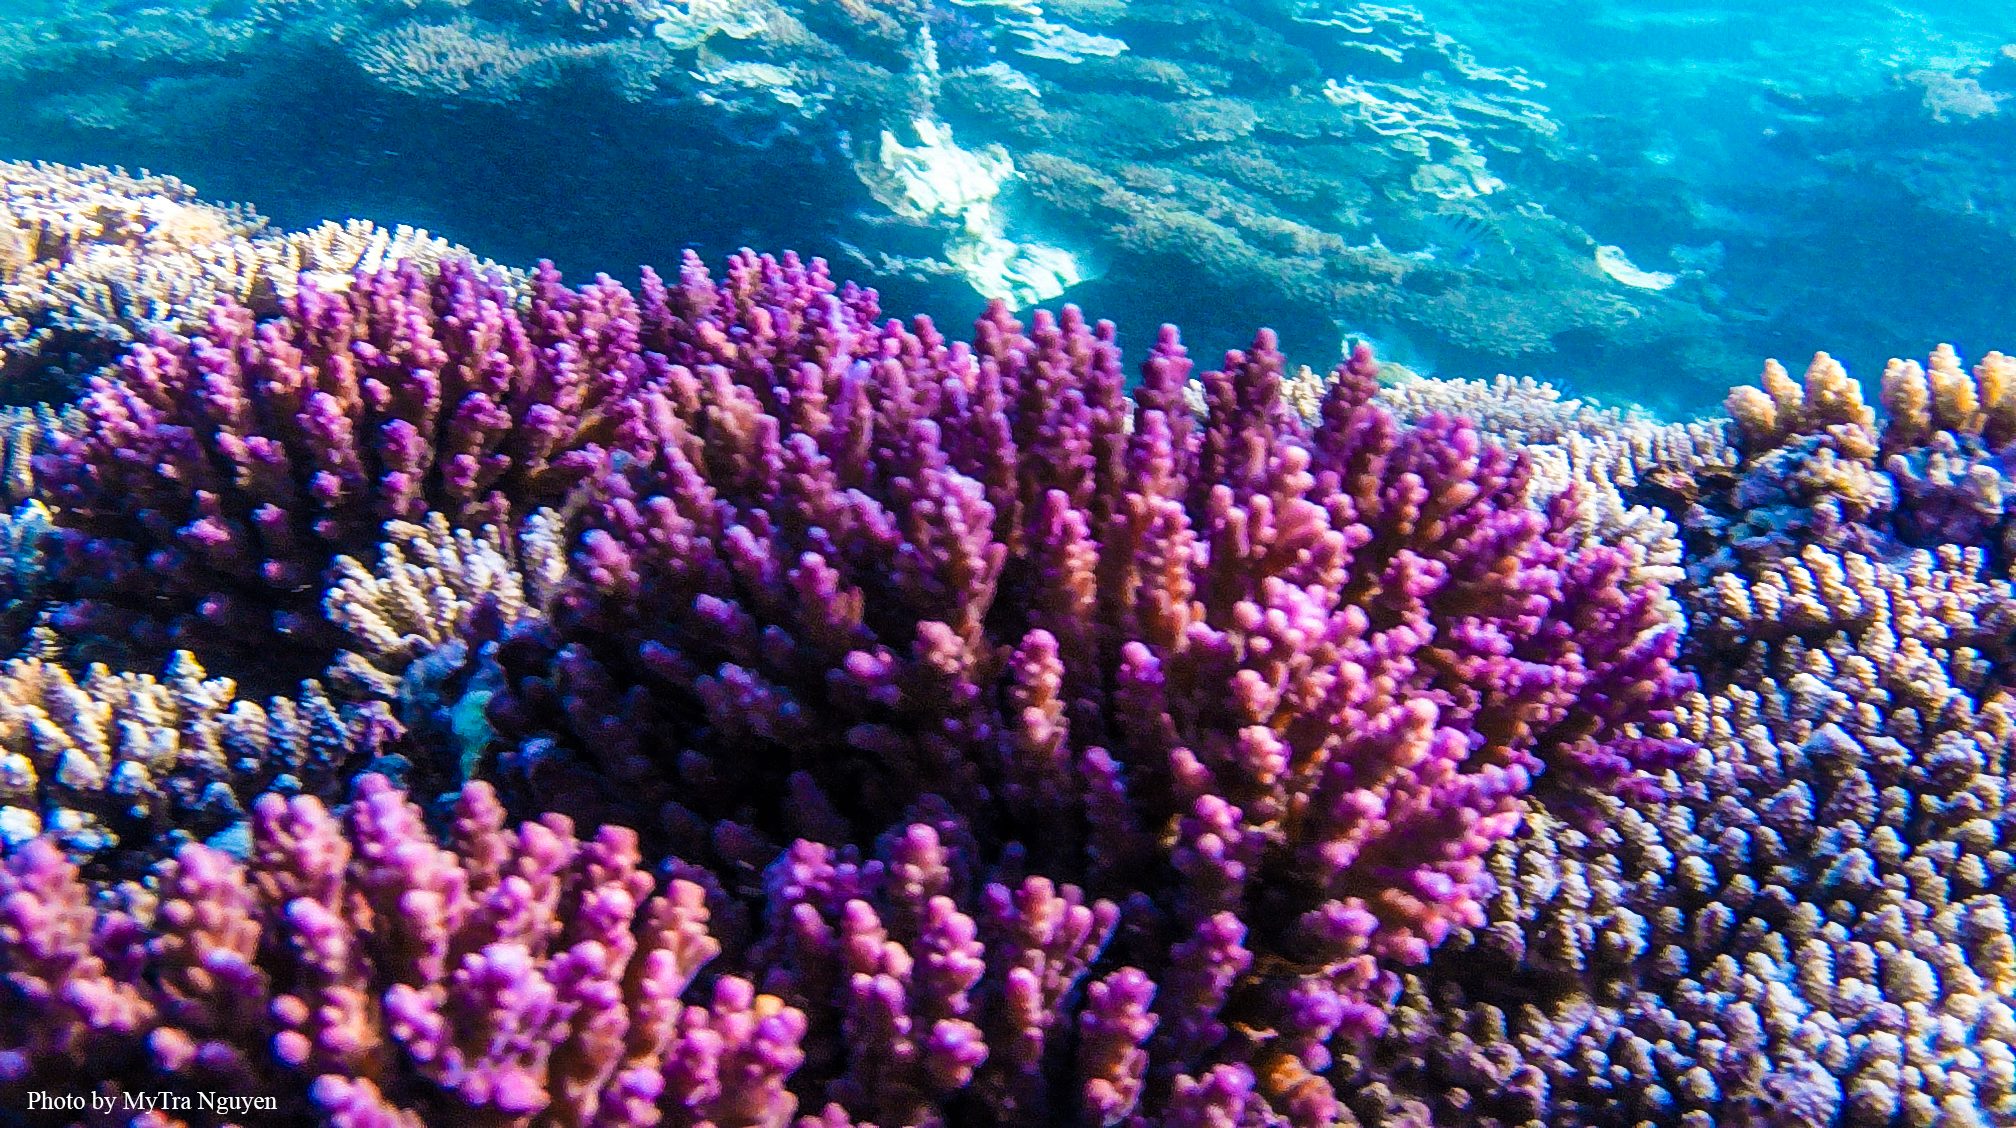 Trải nghiệm cảm giác phiêu lưu tại Gành Yến với những bức hình đầy hấp dẫn và sắc màu ở đáy đại dương. Hãy để cho tâm hồn bạn được thư giãn tìm hiểu một thế giới mới về san hô và con cá.